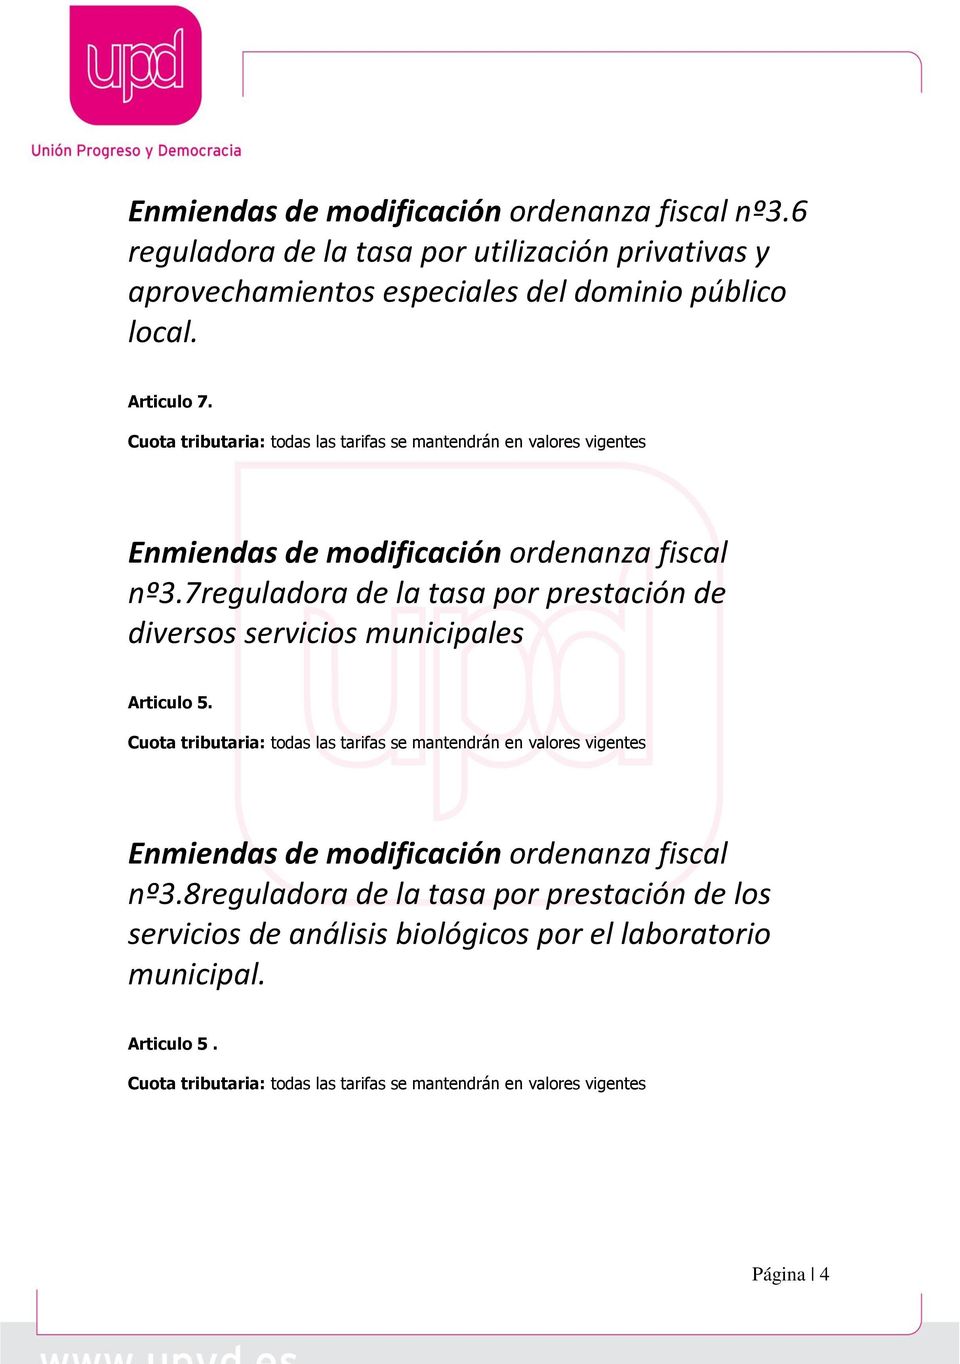 7reguladora de la tasa por prestación de diversos servicios municipales Articulo 5.